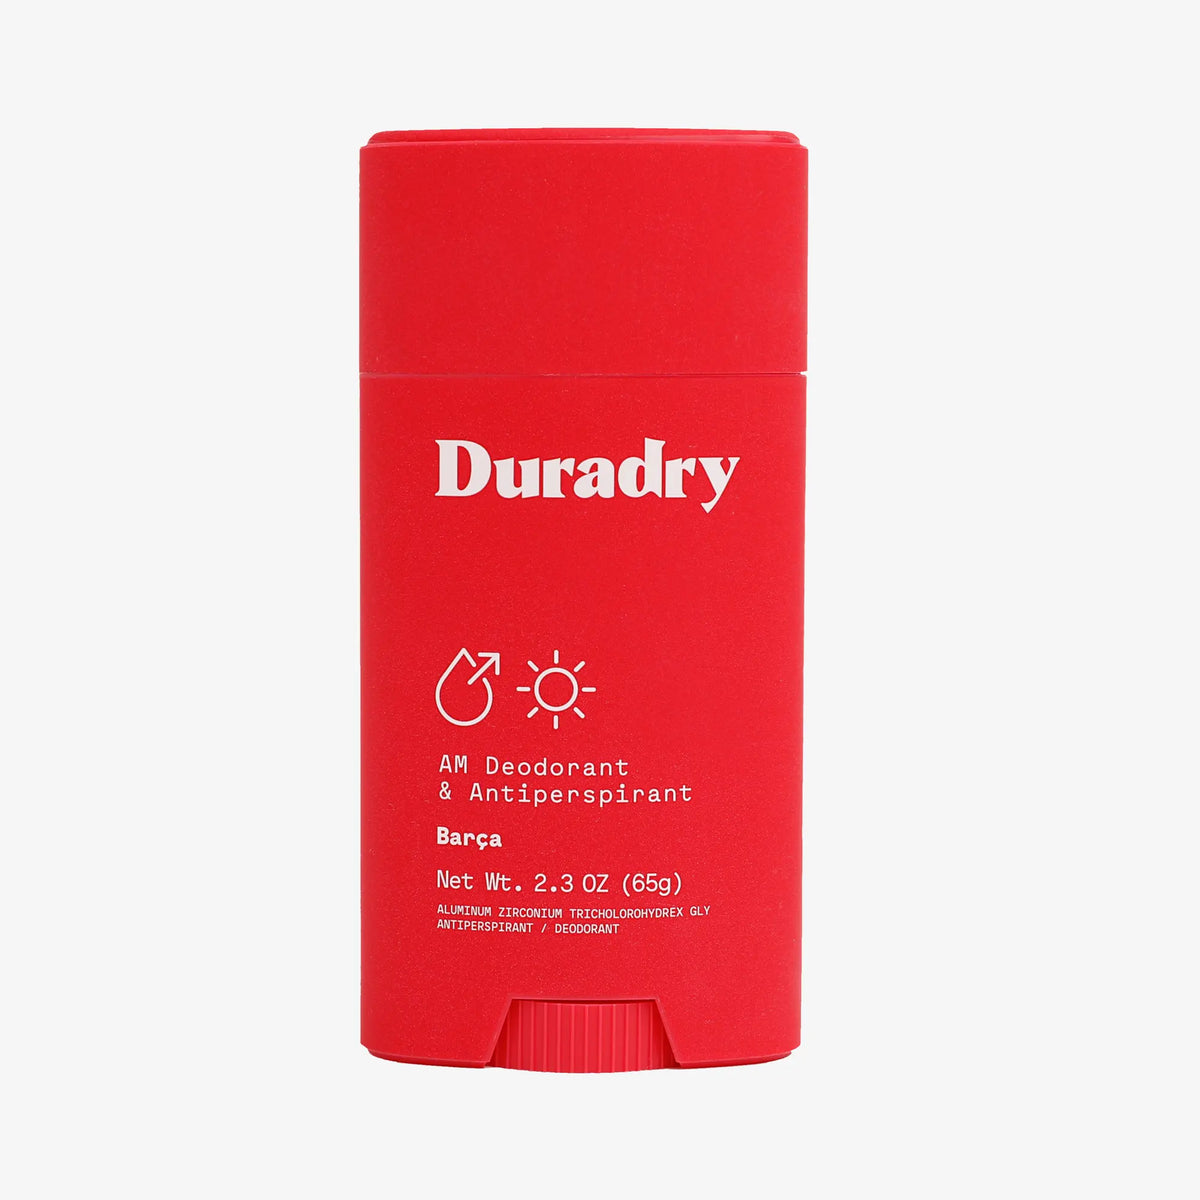 Duradry AM Antiperspirant Deodorant Stick